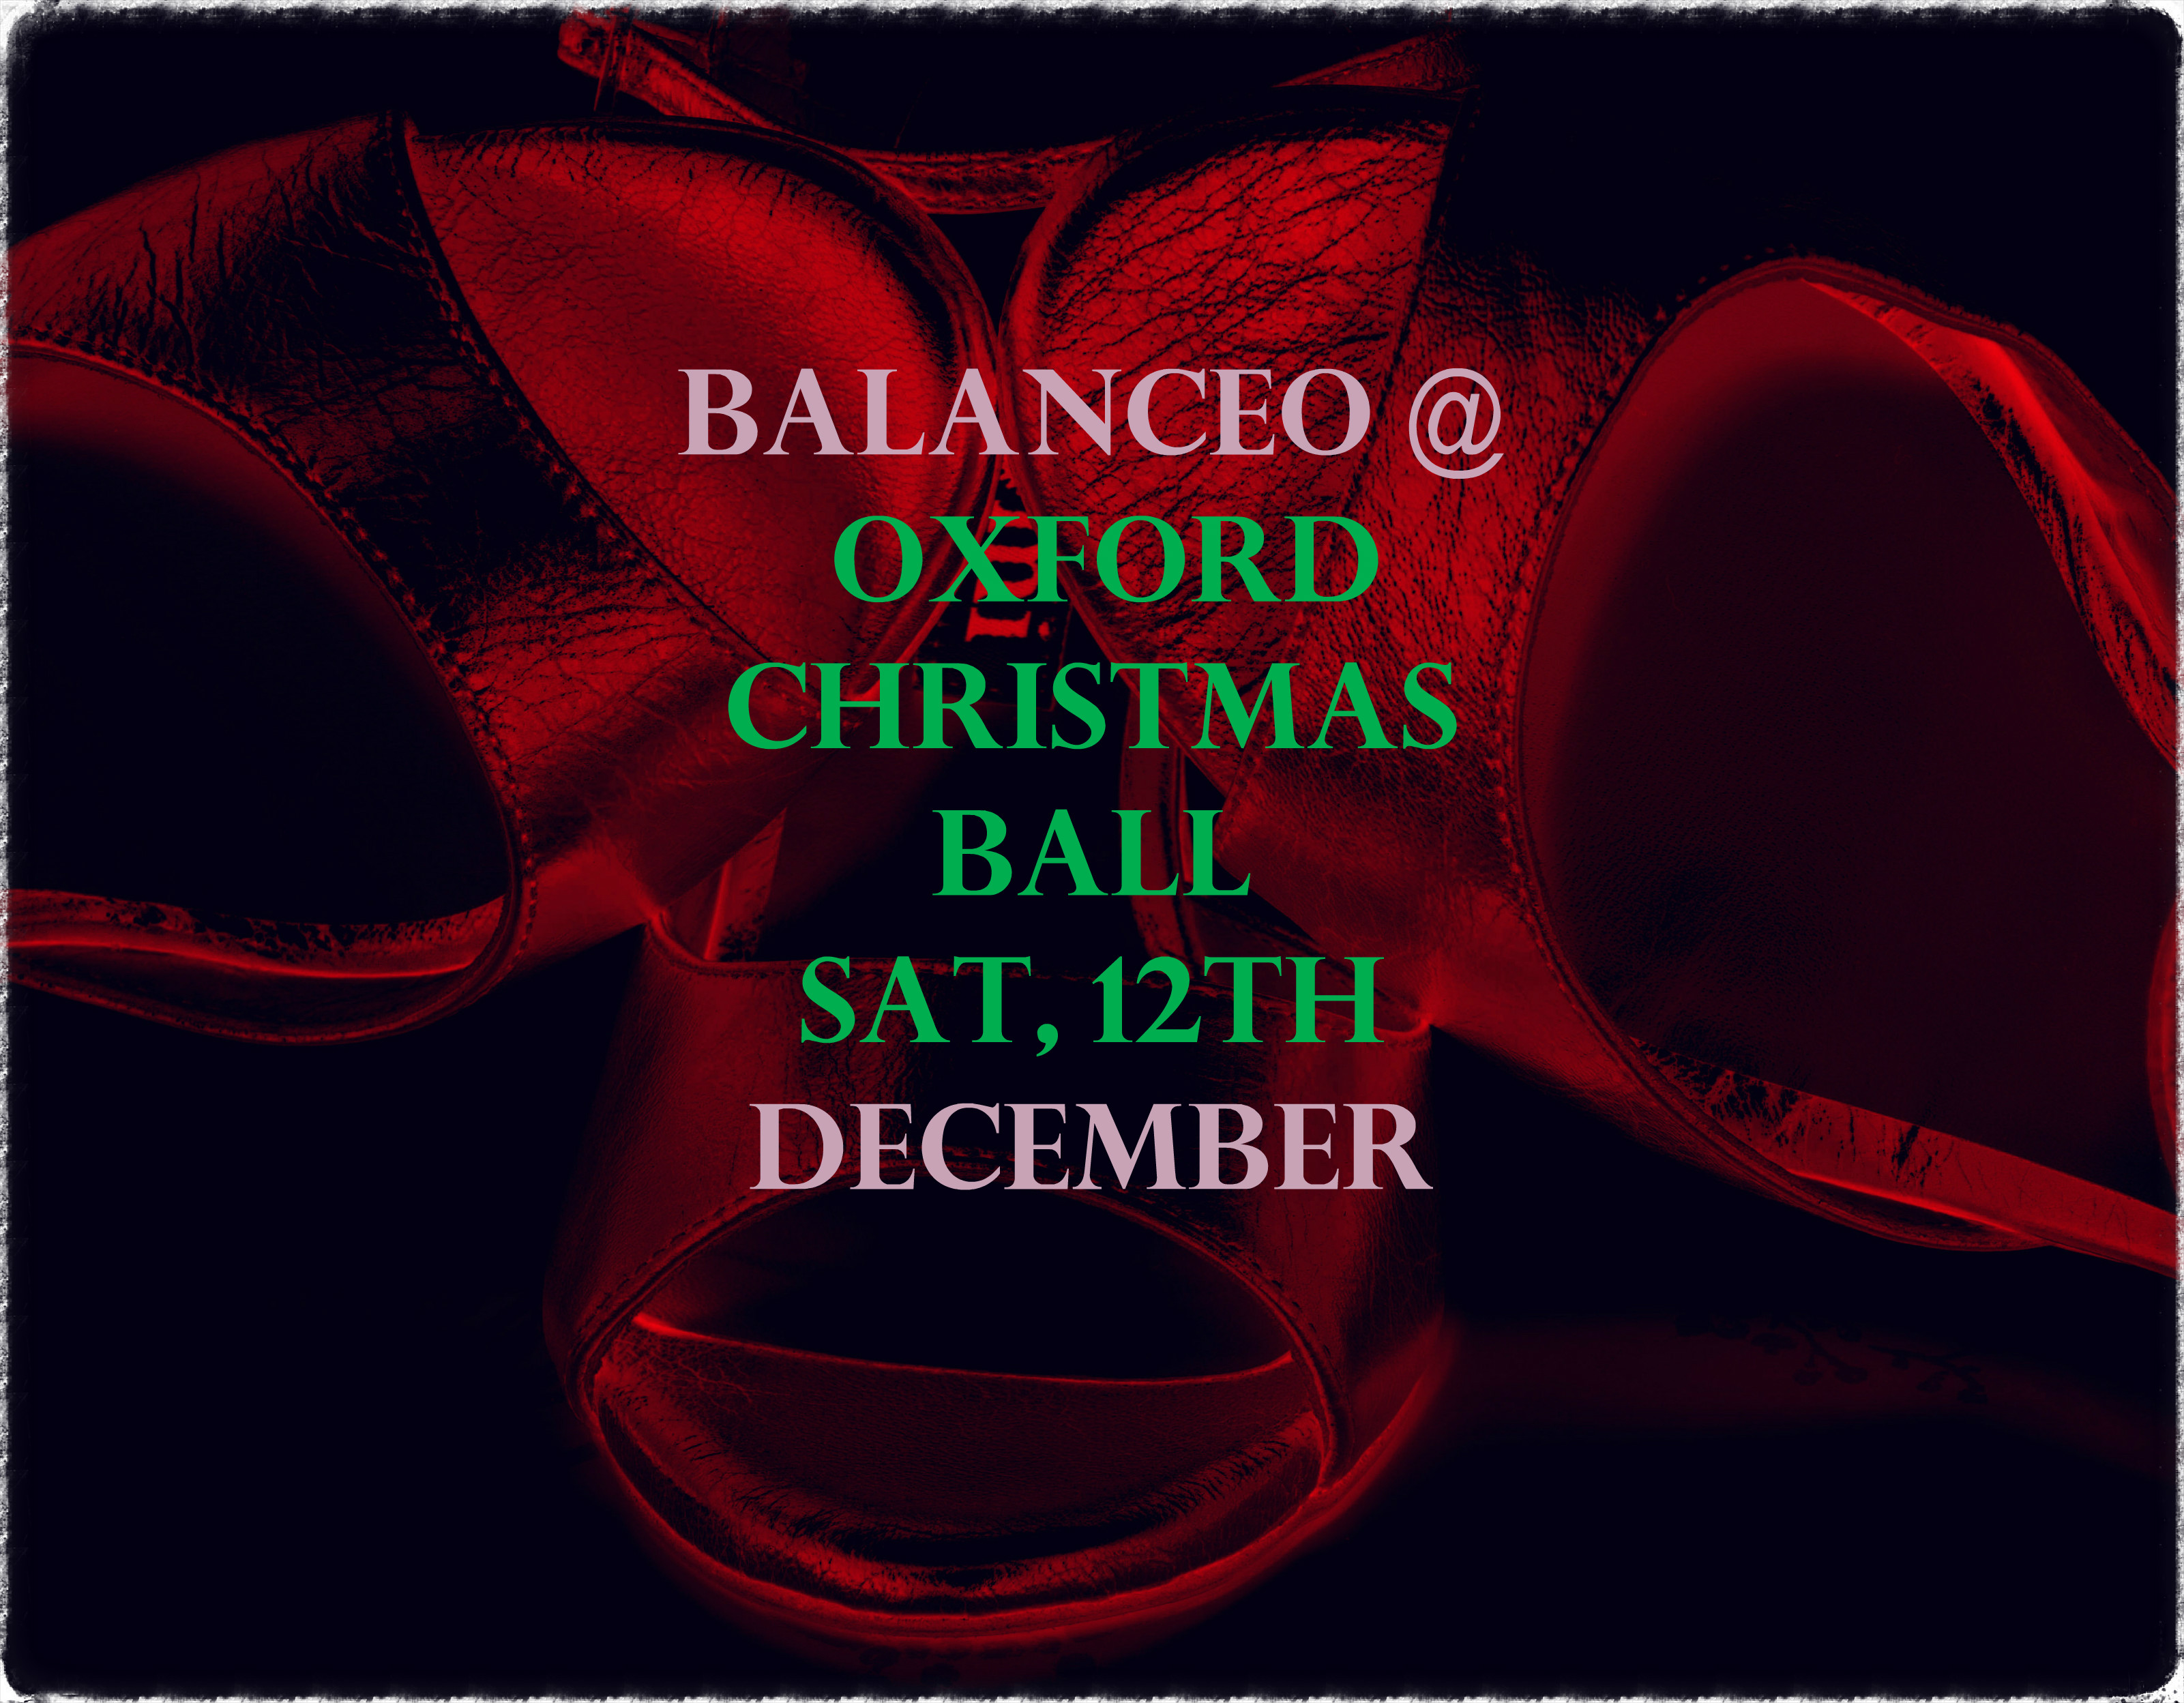 Balanceo @ Oxford Christmas Ball